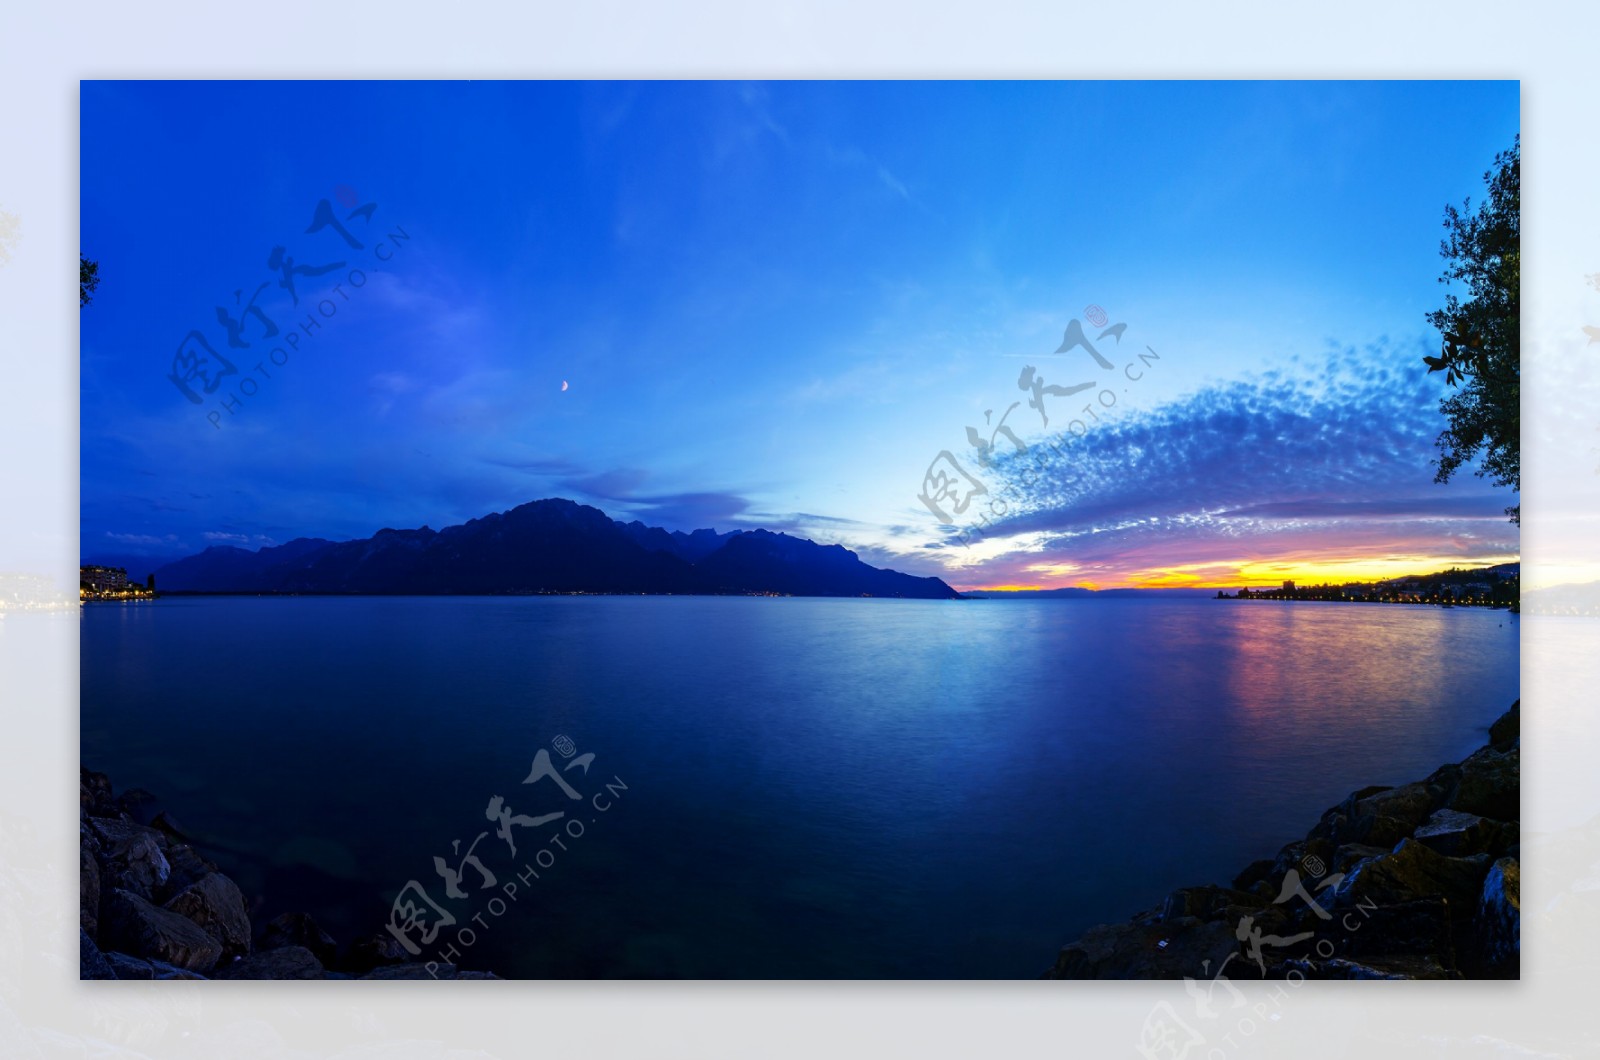 黄昏下的湖泊美景图片